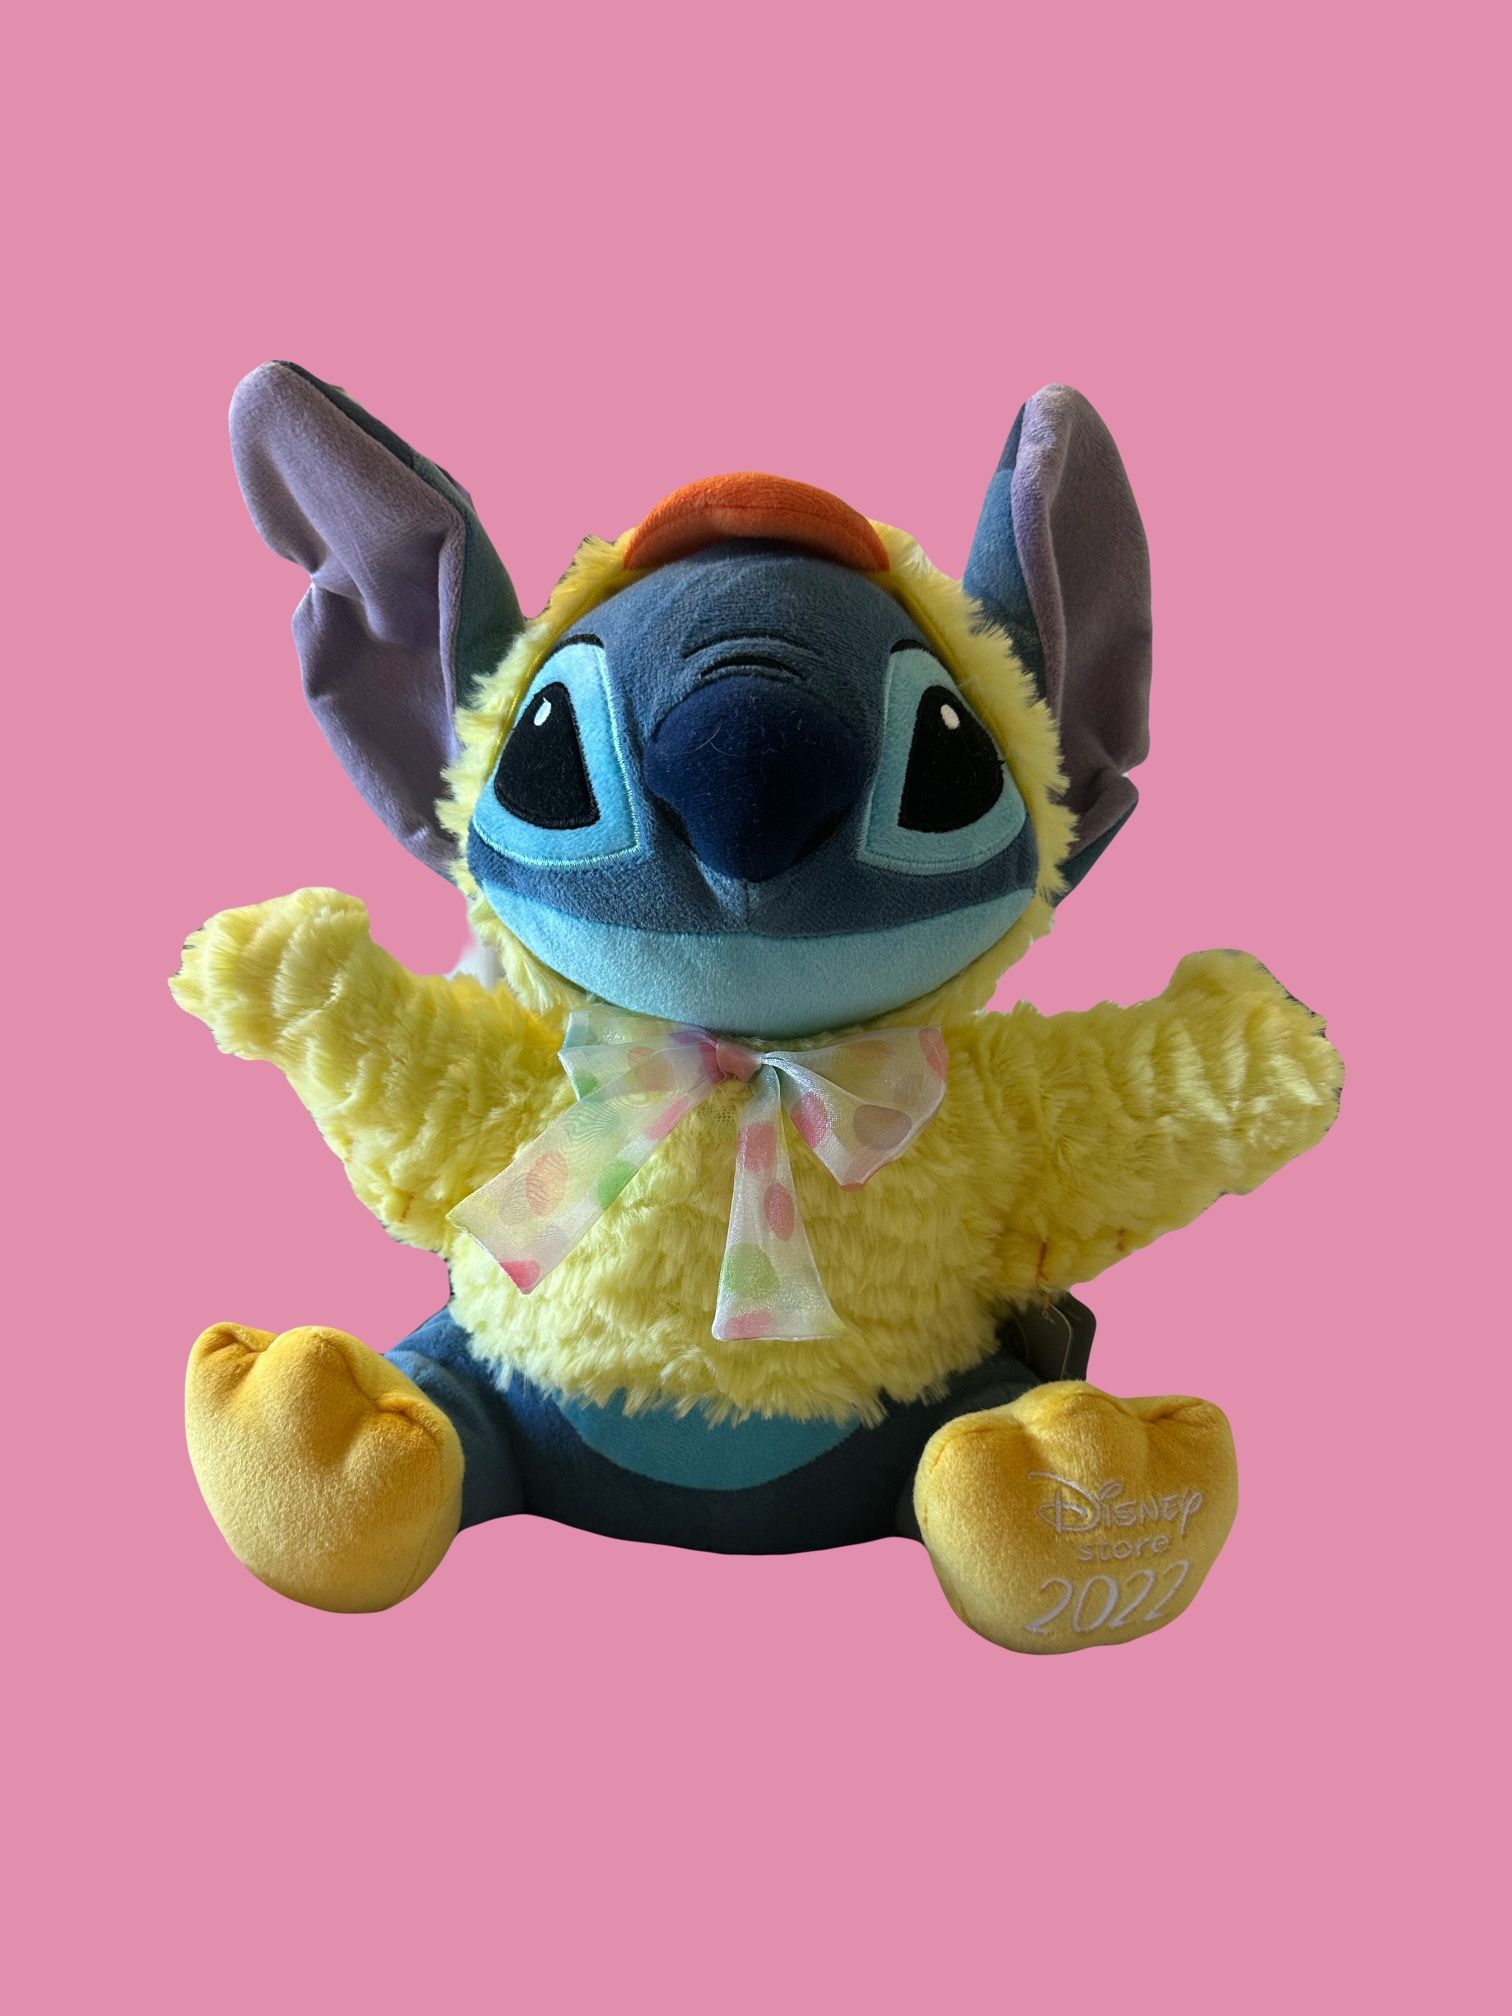 2023 Easter Disney Stitch Plush Large Stuffed Animal Lilo & Stitch Plush  Toy